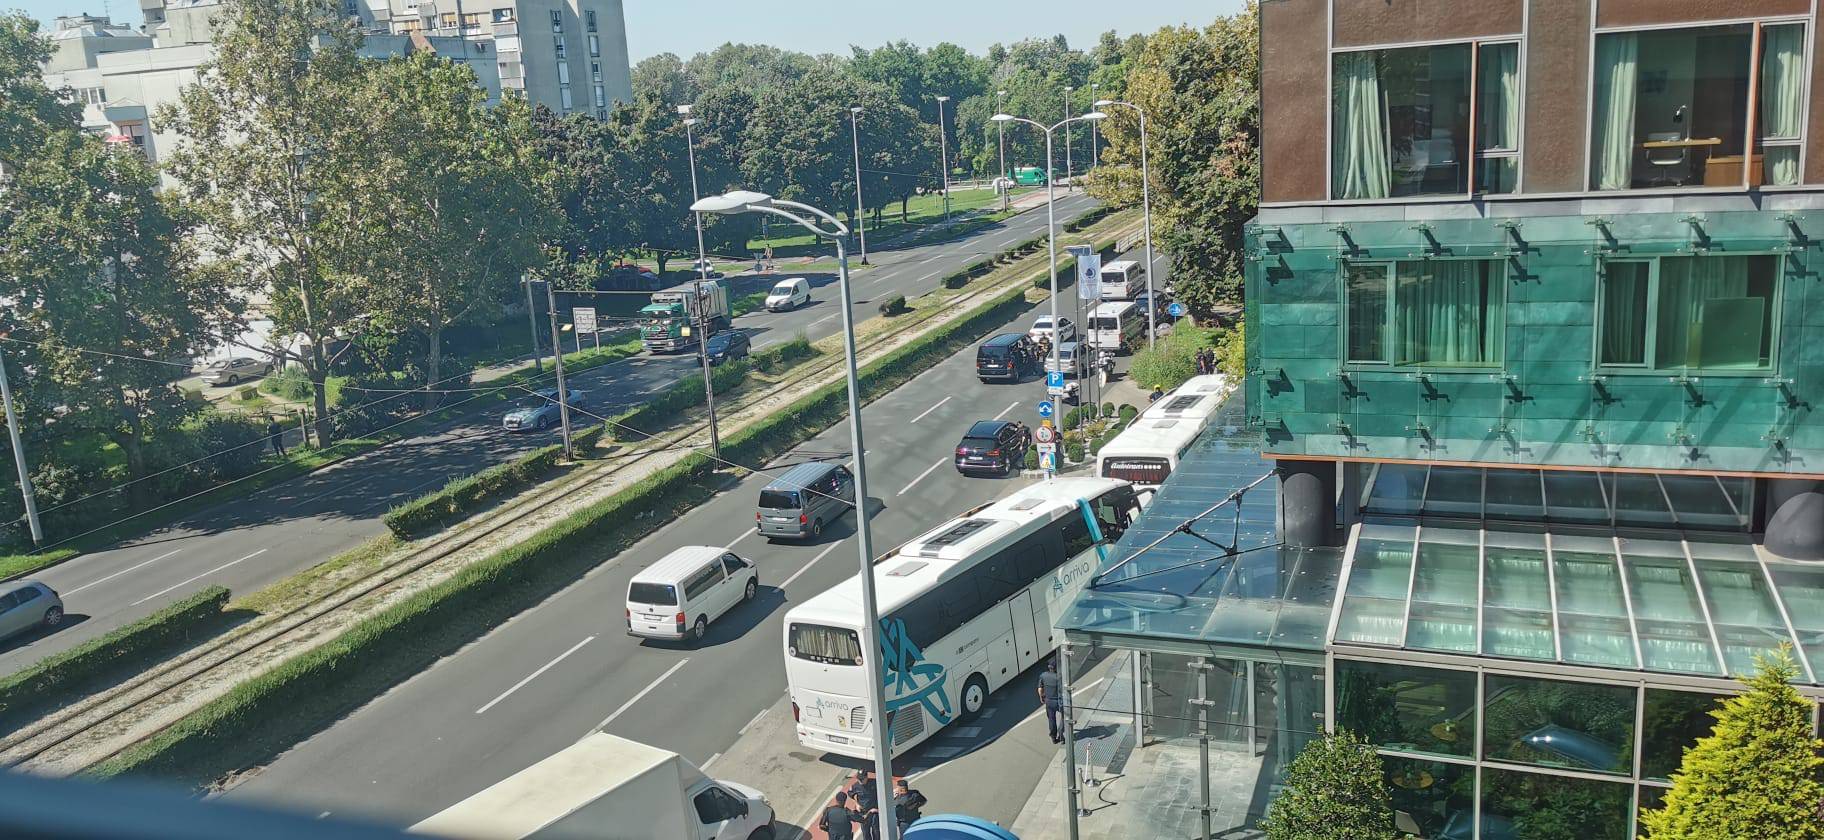 AEK-ovi igrači stigli u Zagreb, jake policijske snage čuvaju hotel: 'Sve je puno interventne'